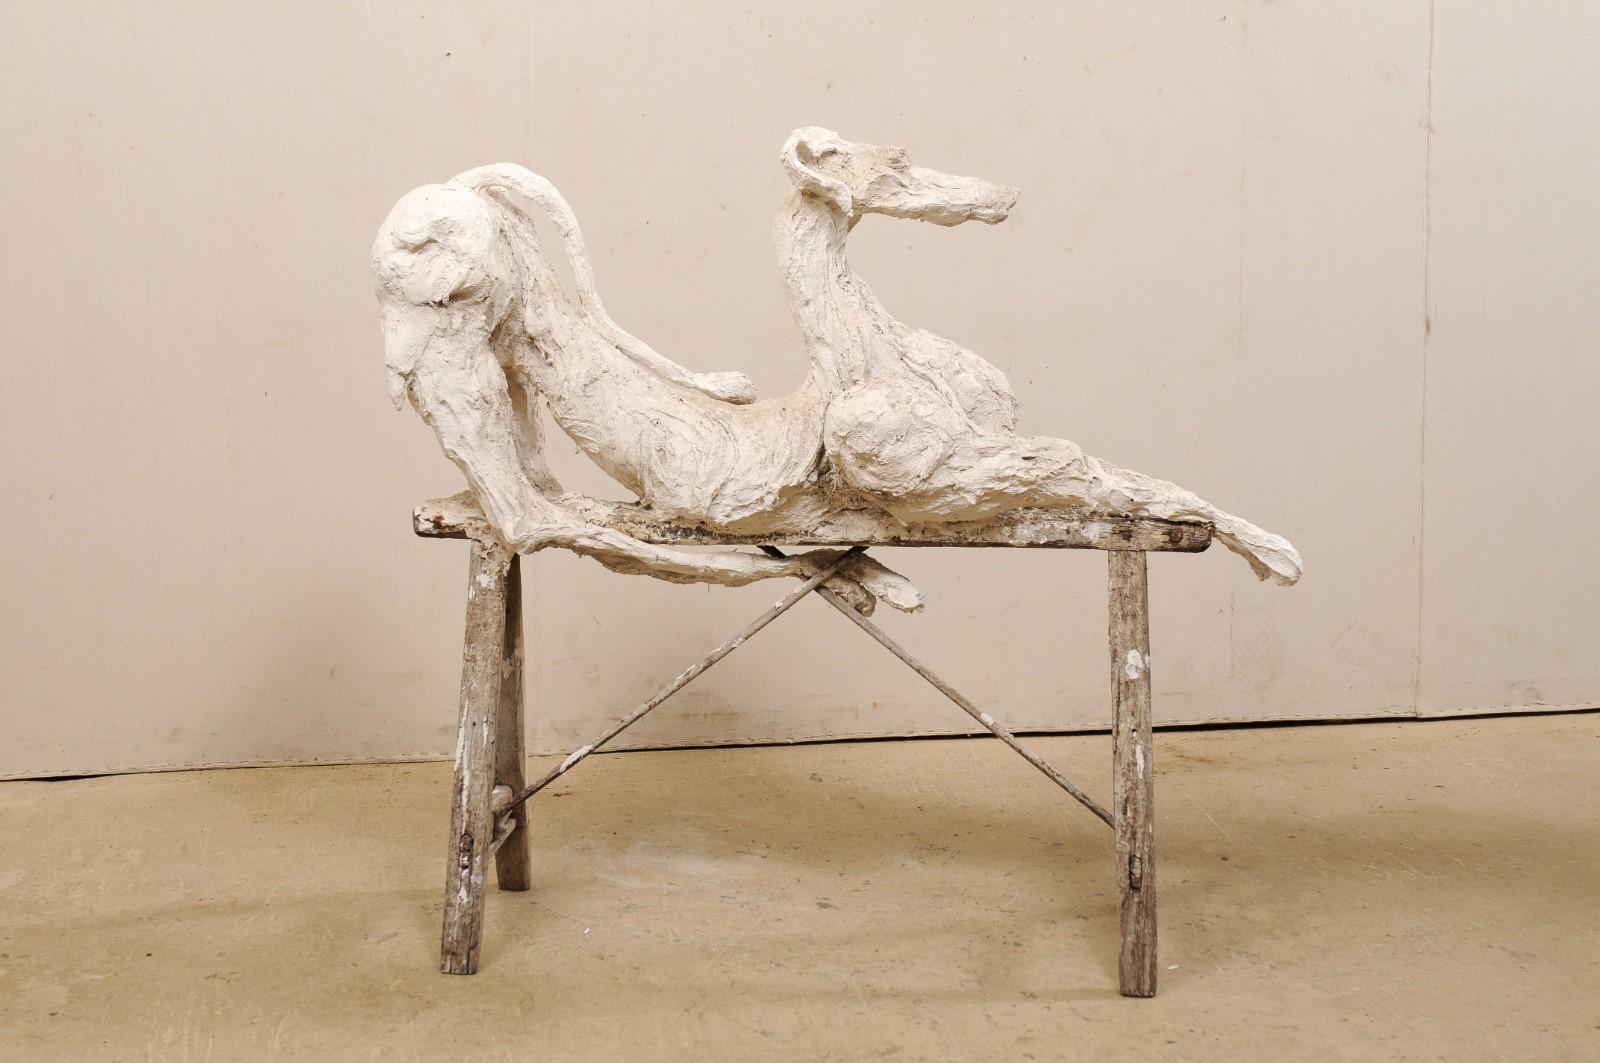 Plaster Large French Greyhound Sculpture Poised on Sawhorse Leg Base